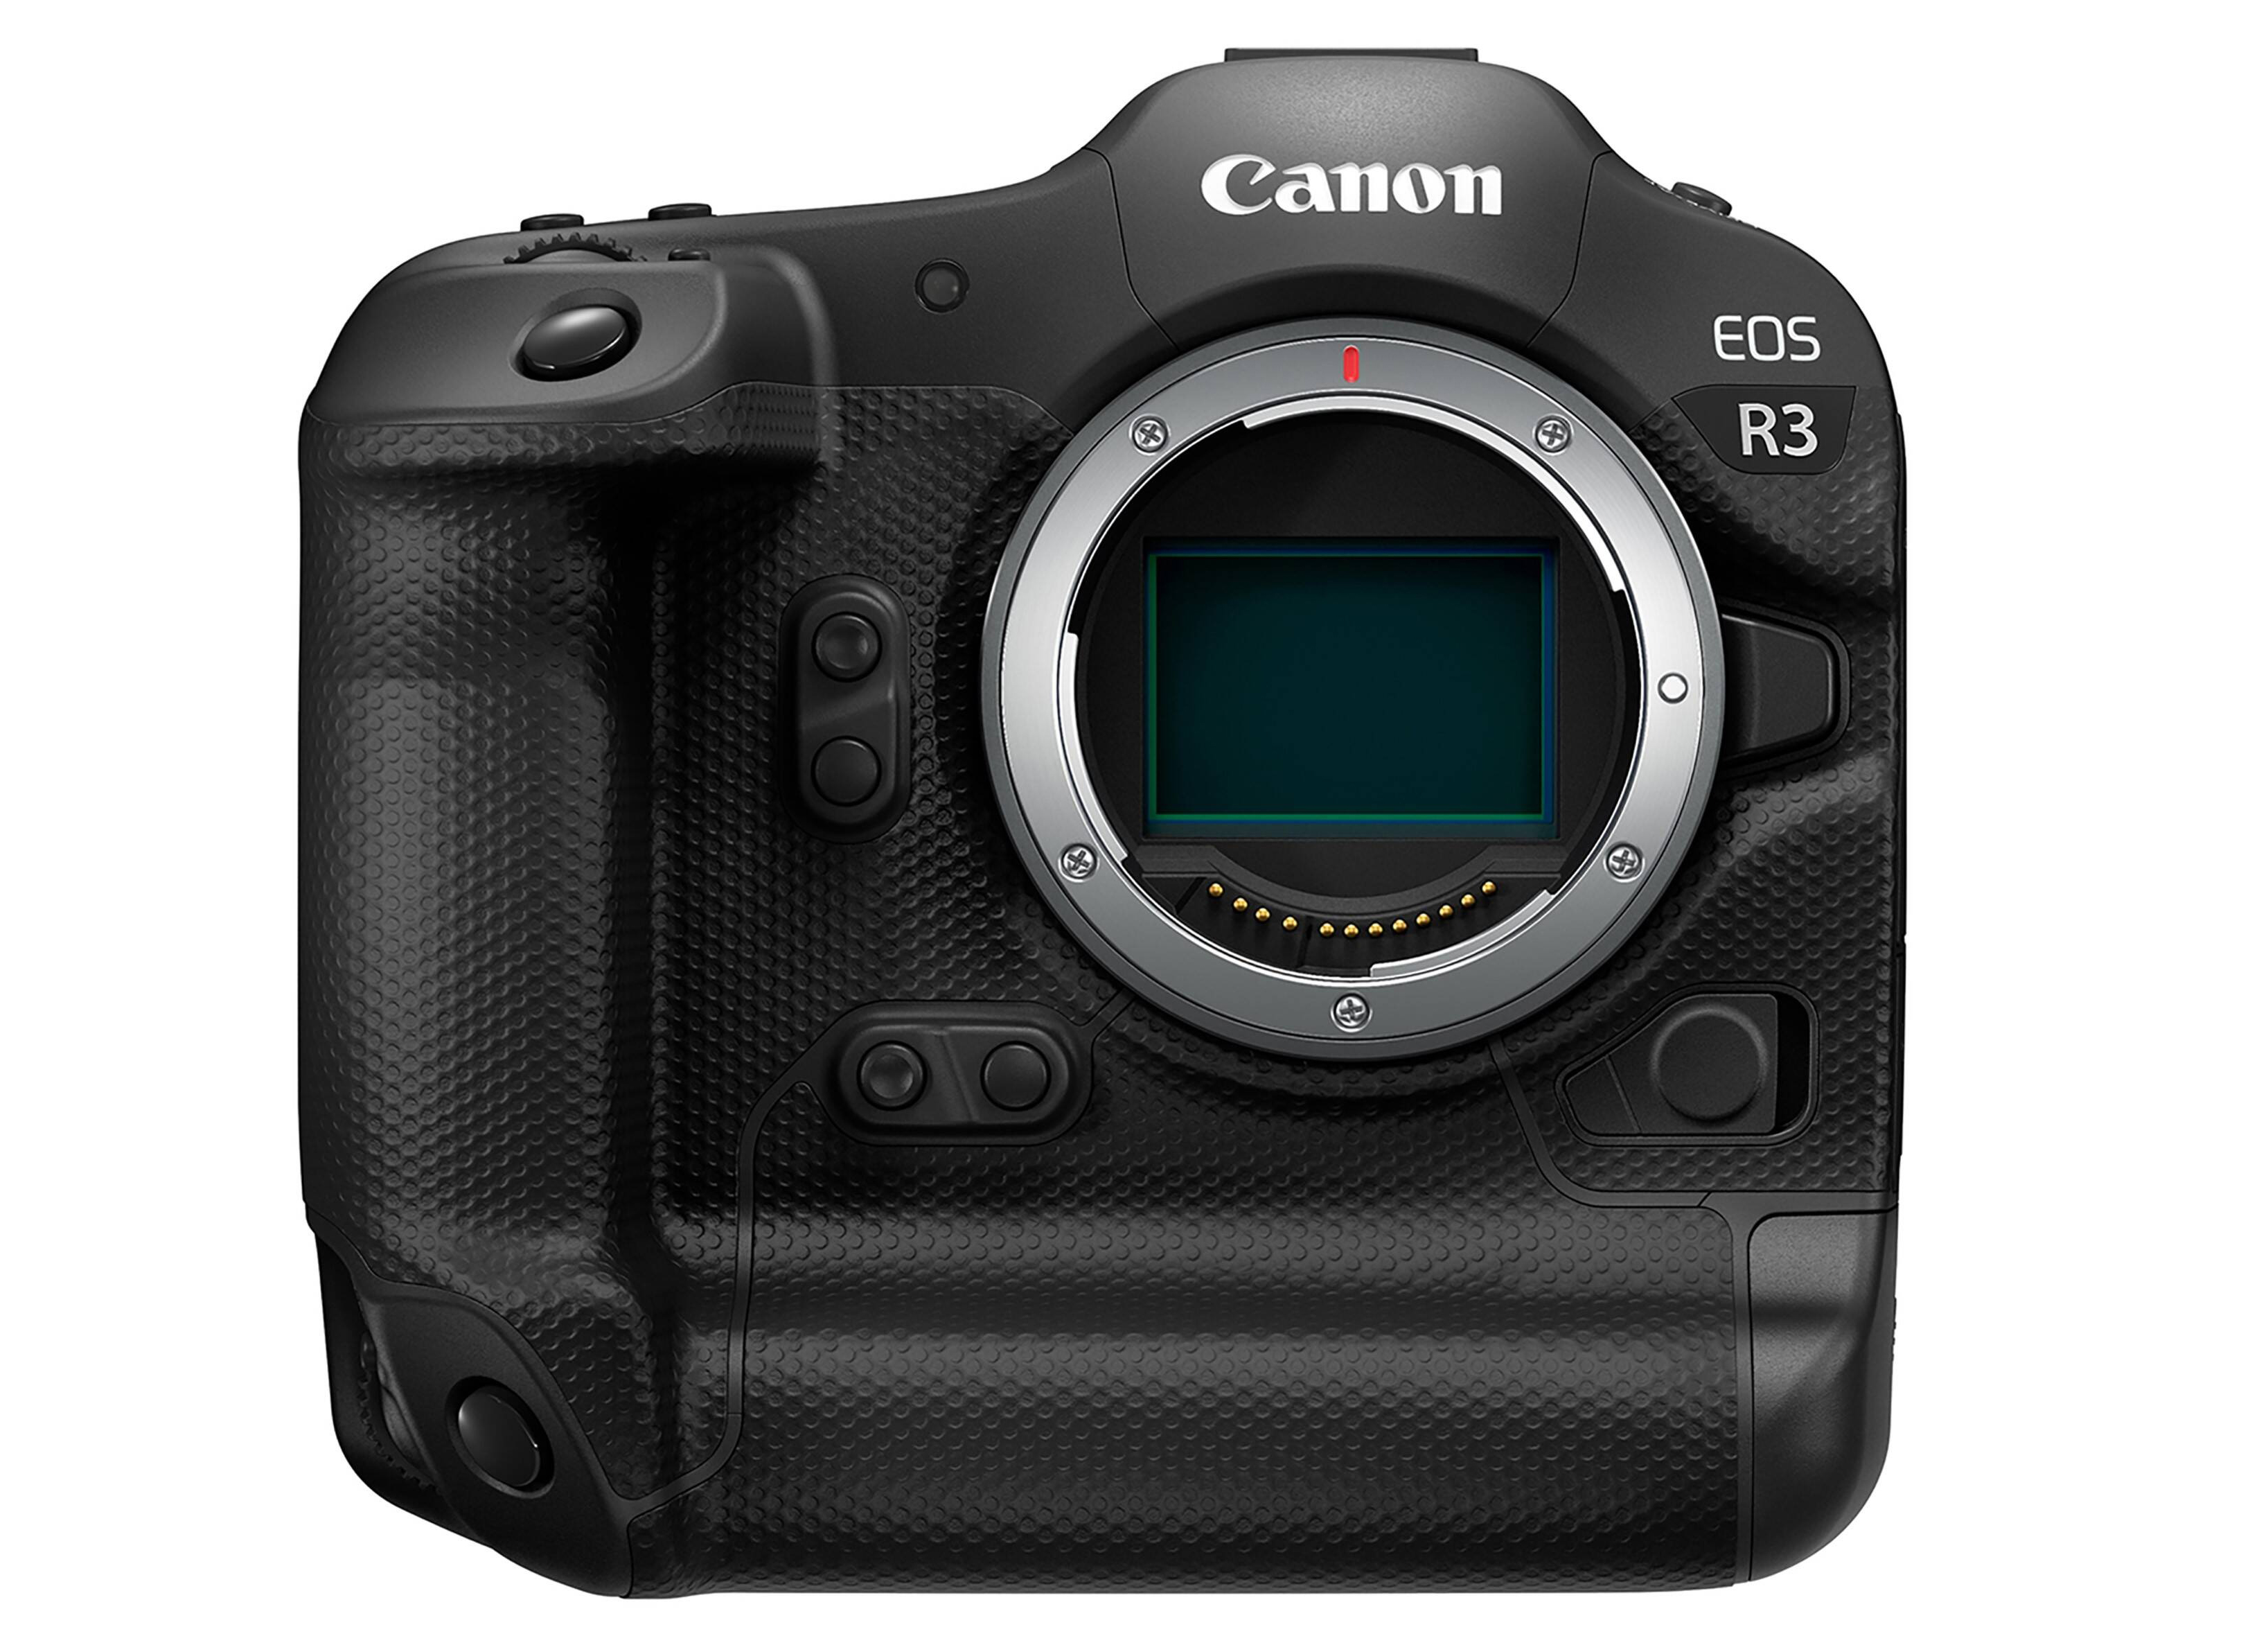 Canon EOS R3 xứng danh nằm trong top máy hình ảnh Canon rất tốt hiện nay nay